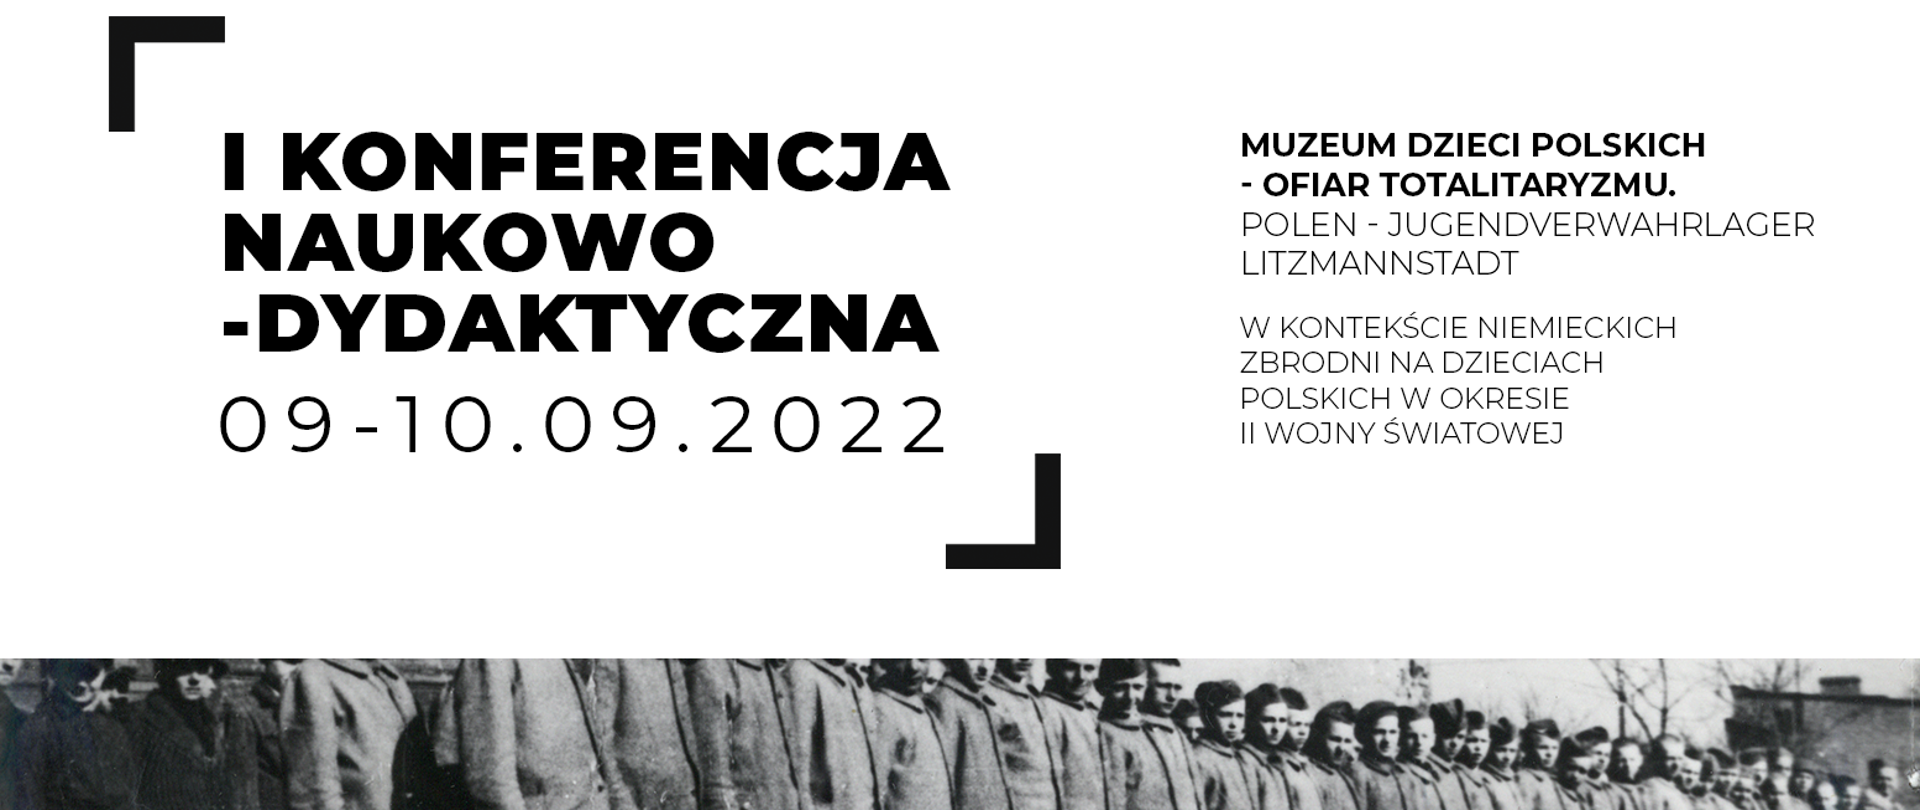 Niemieckie zbrodnie na polskich dzieciach w okresie II wojny światowej – konferencja 